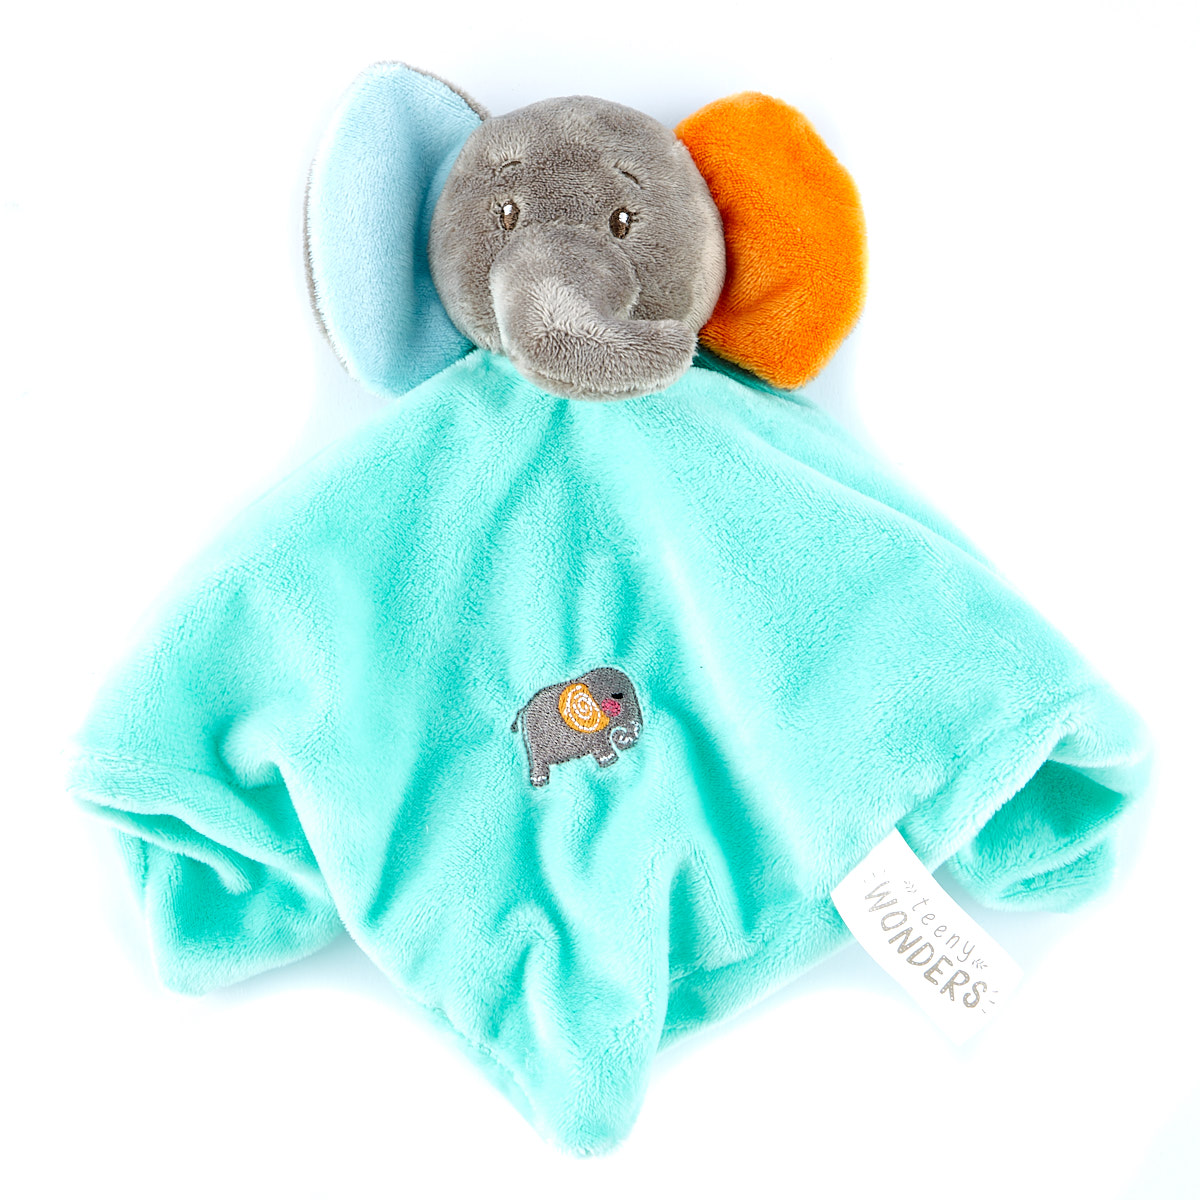 Teeny Wonders Elephant Baby Comforter 